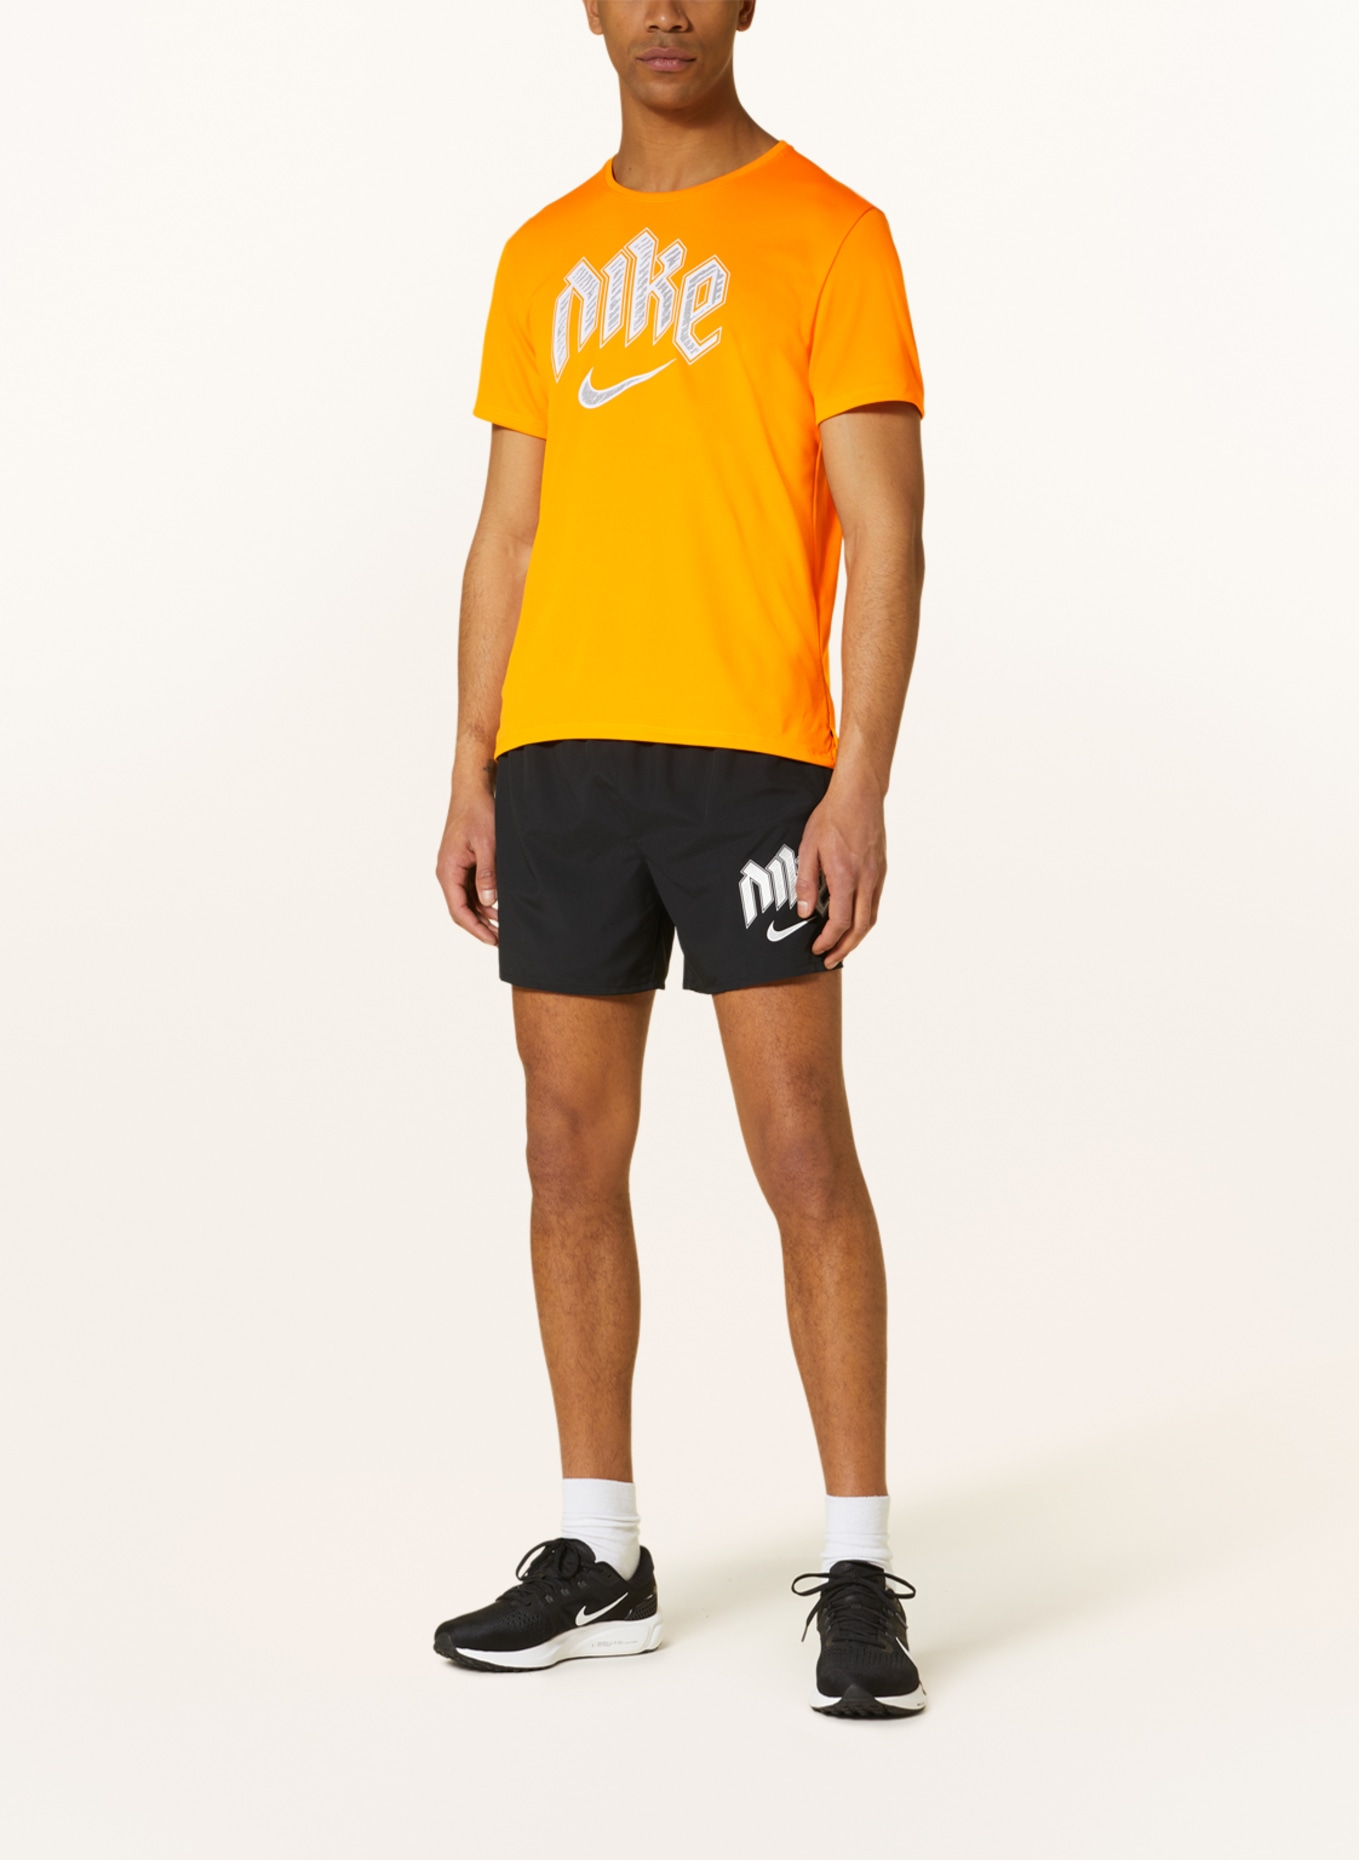 Nike Running shirt DRI-FIT RUN DIVISION MILER, Color: NEON ORANGE (Image 2)